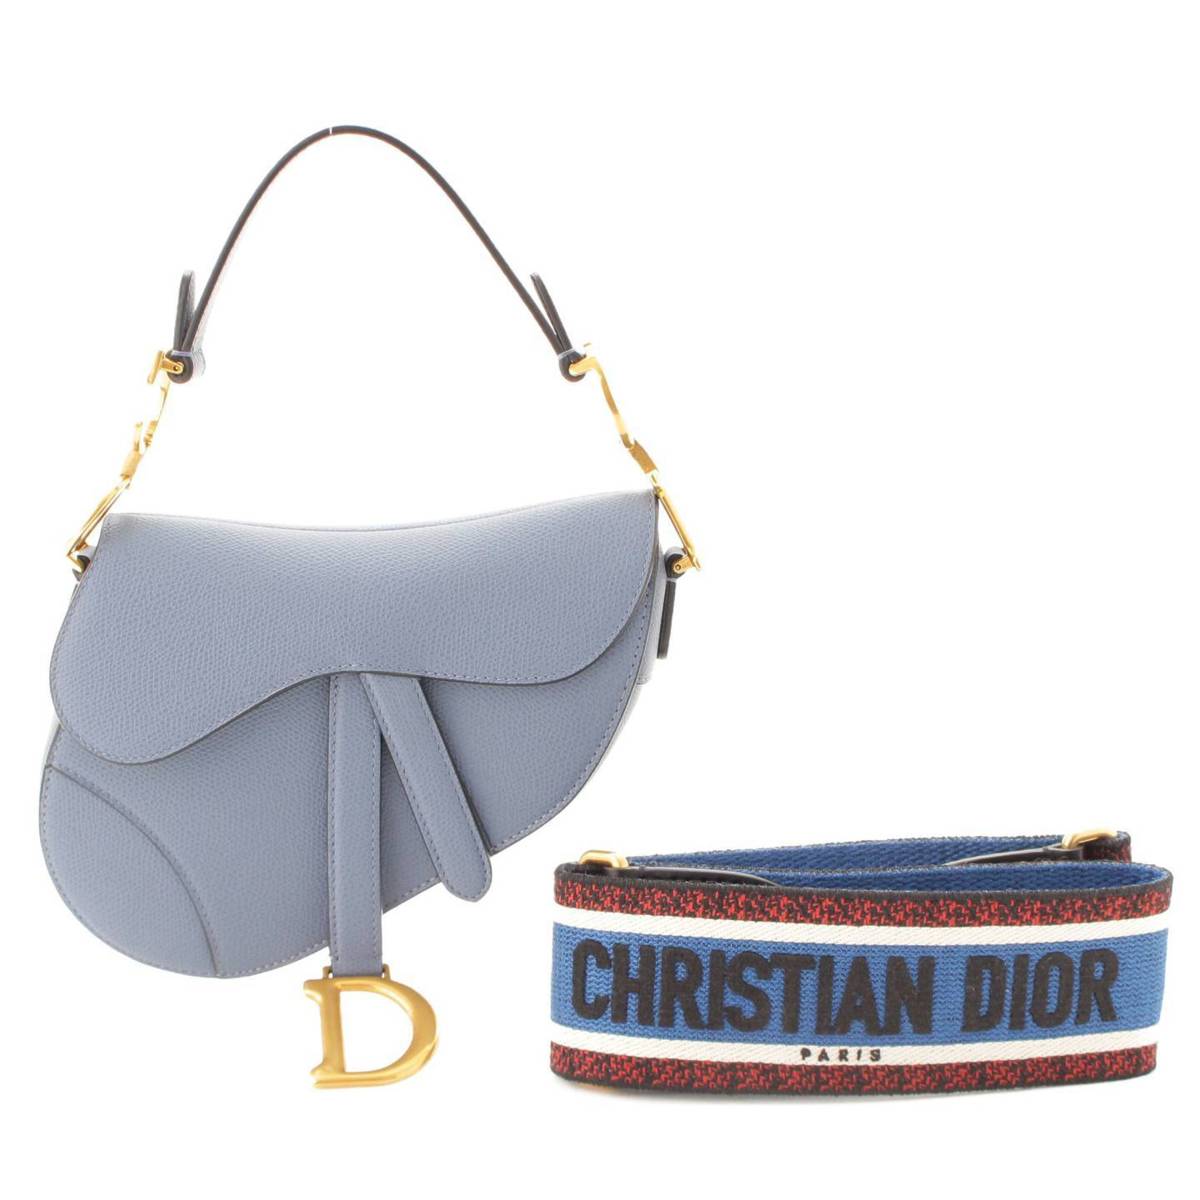 クリスチャン ディオール(Christian Dior) SADDLE 全面刺繍ストラップ付 サドルバッグ ショルダーバッグ ブルー 中古 通販  retro レトロ